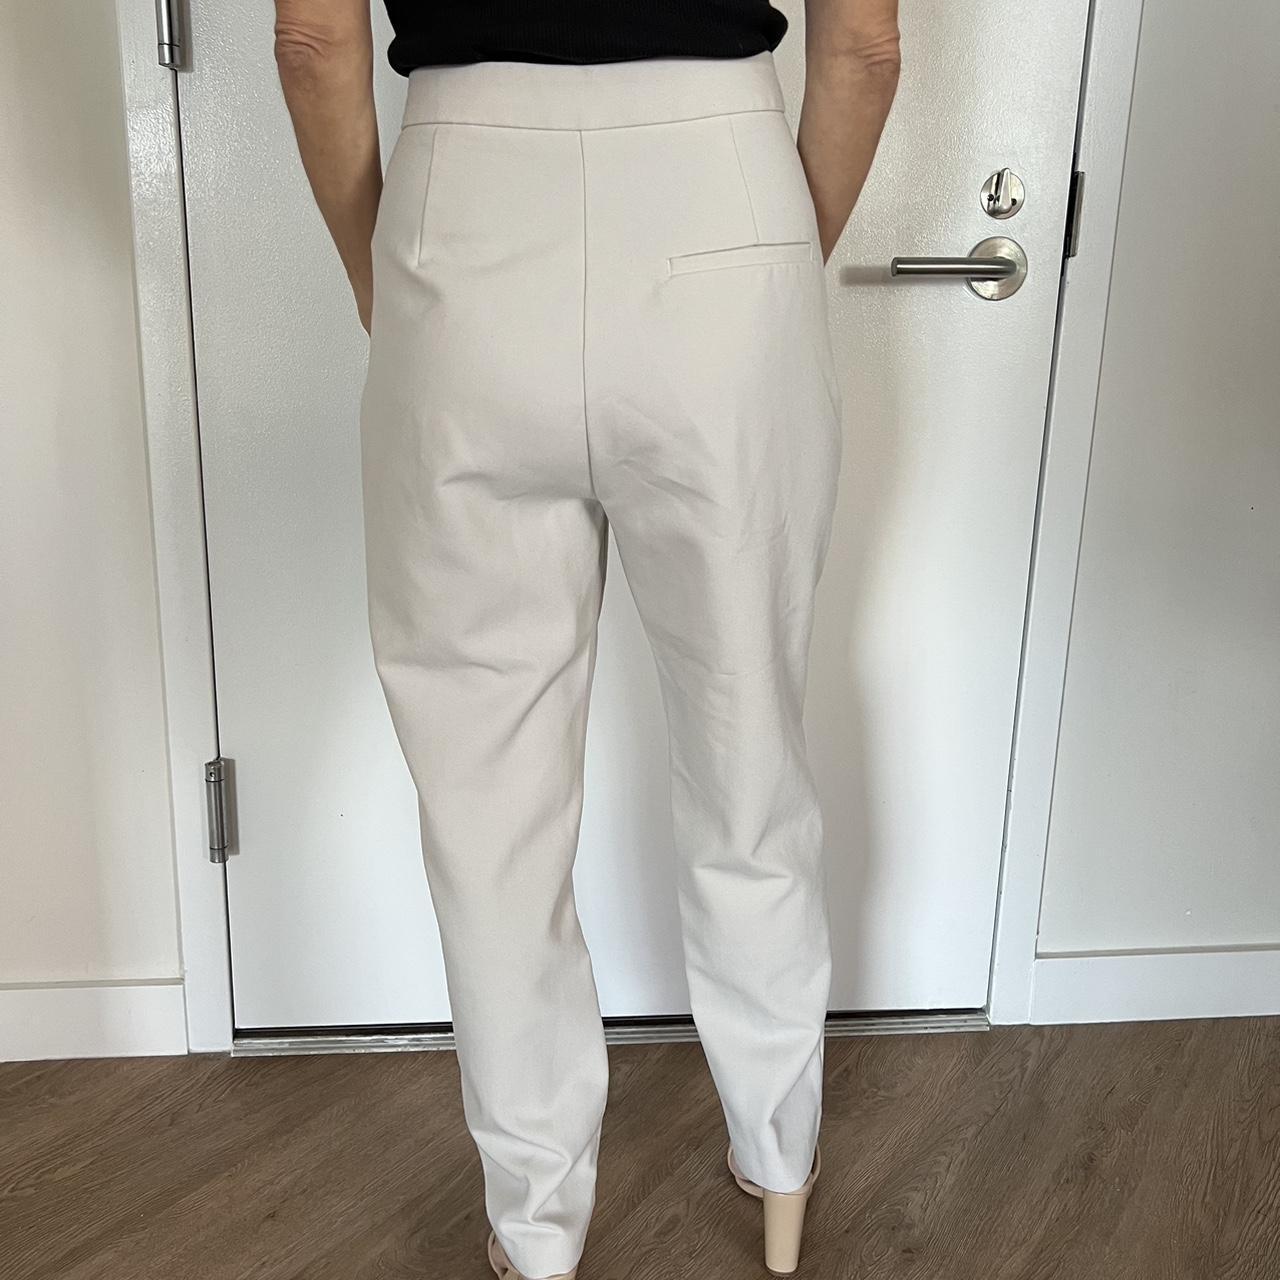 Zara Cream colored pants - work pants - formal pants - Depop